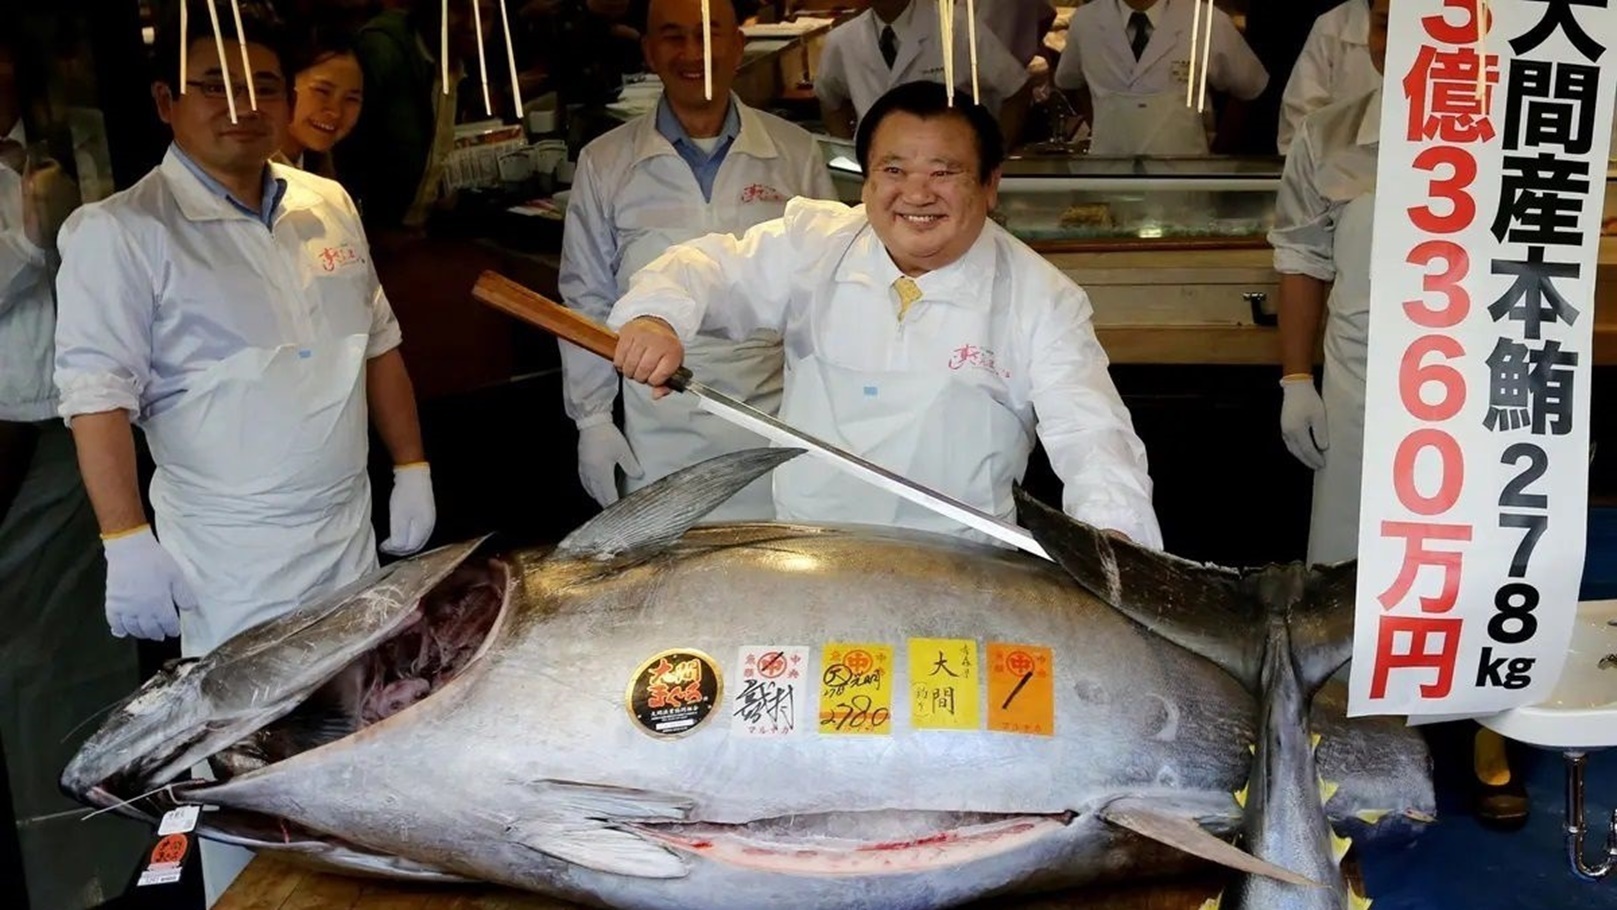 سمكة التونة التي تم بيعها بأكثر من 3 مليون دولار
